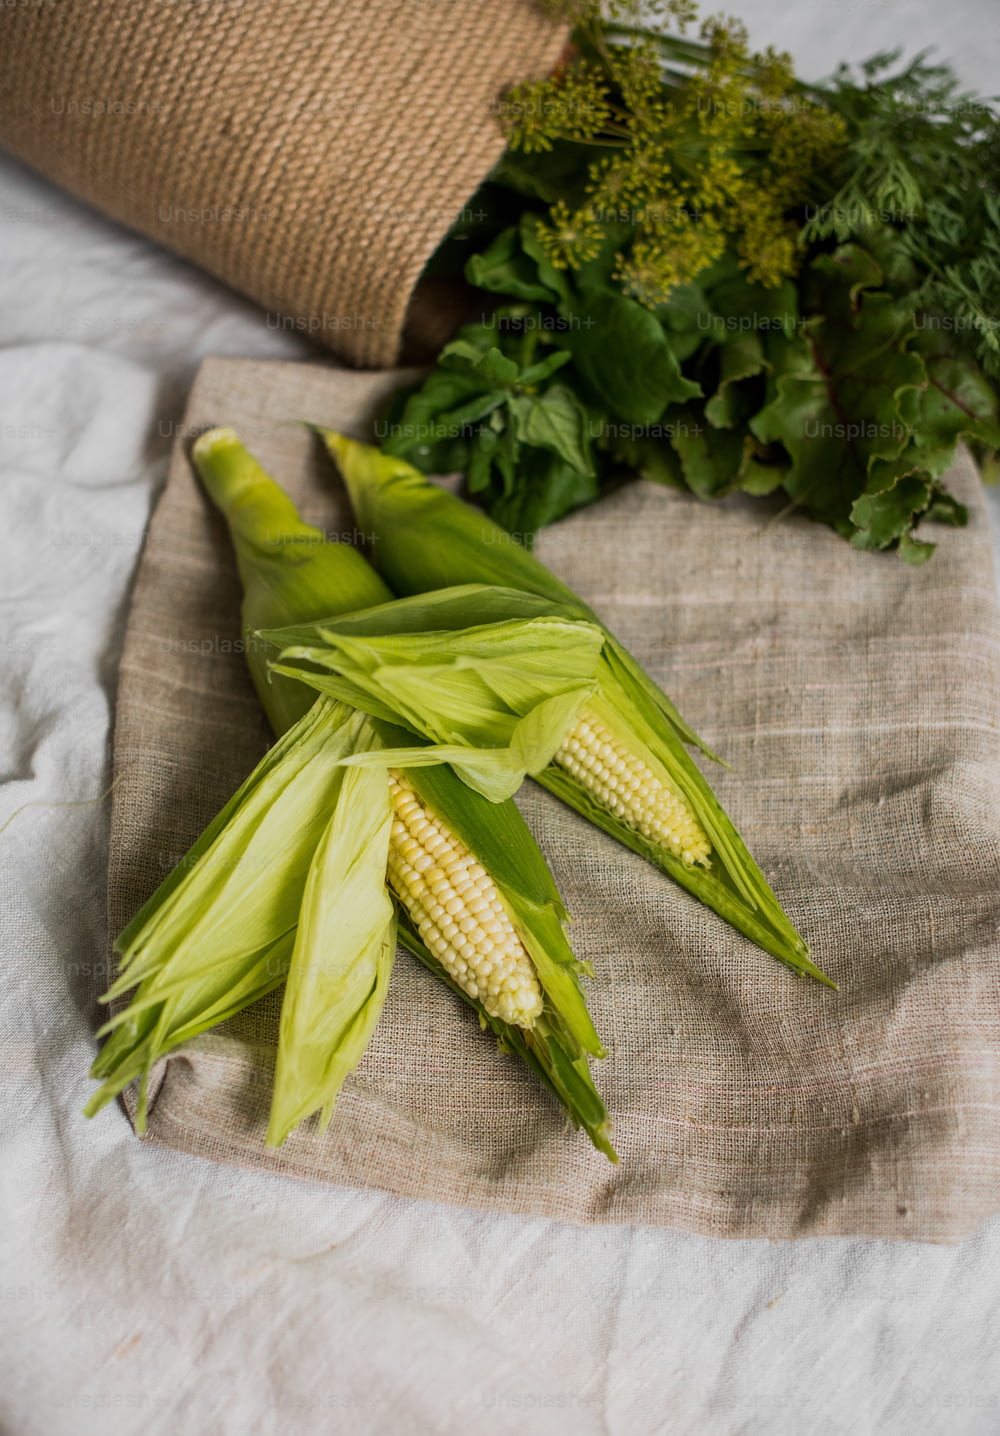 Maiskolben und anderes Gemüse auf einem Tuch